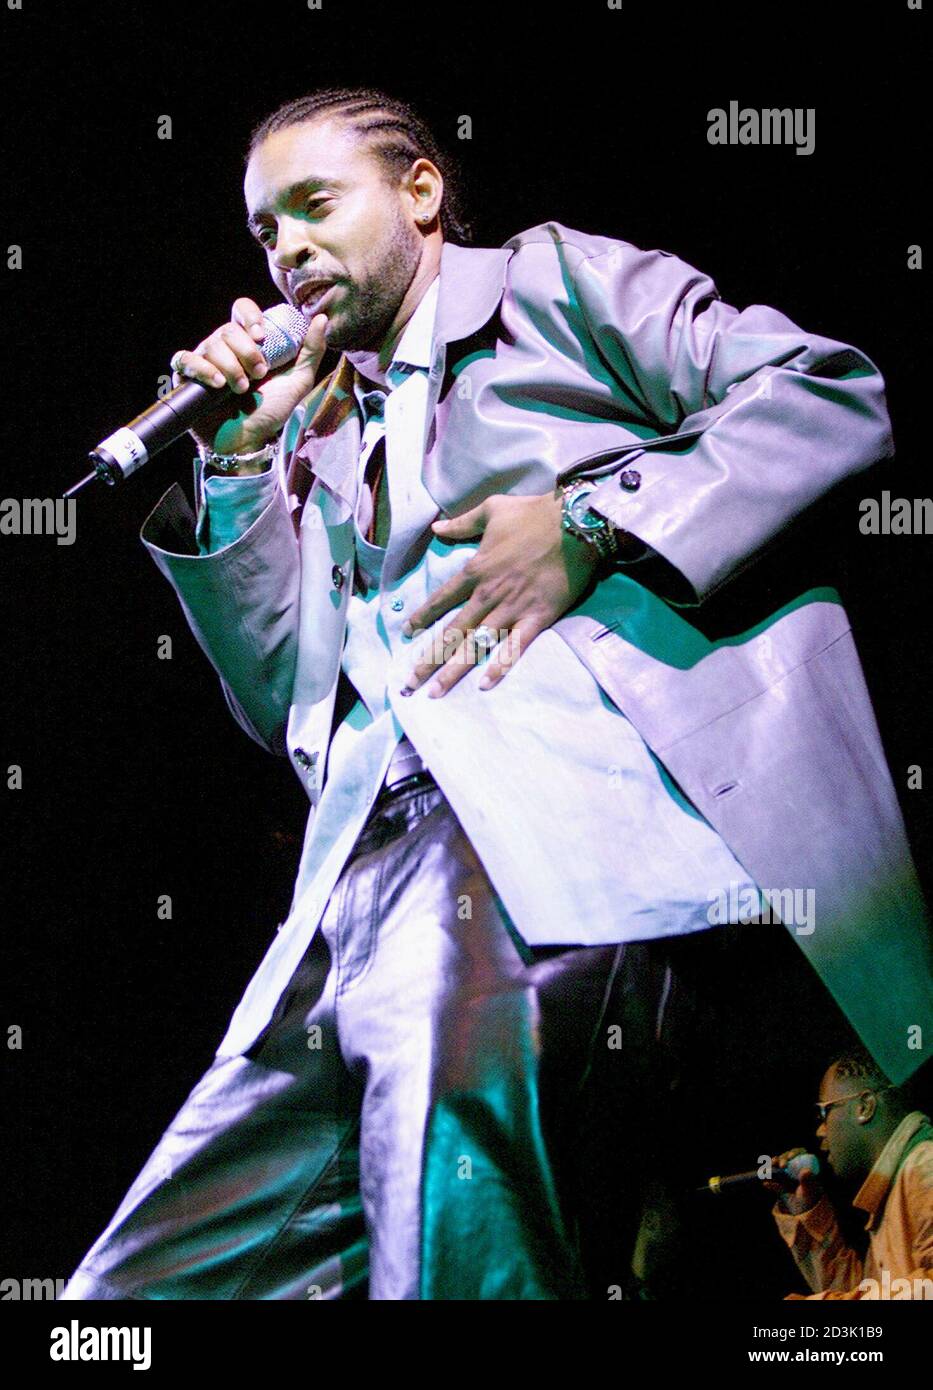 La superestrella Reggae-pop Shaggy, el 1 de marzo de 2001 en una fiesta de la estación de radio en Nueva York, conserva su punto número 1 en las listas de